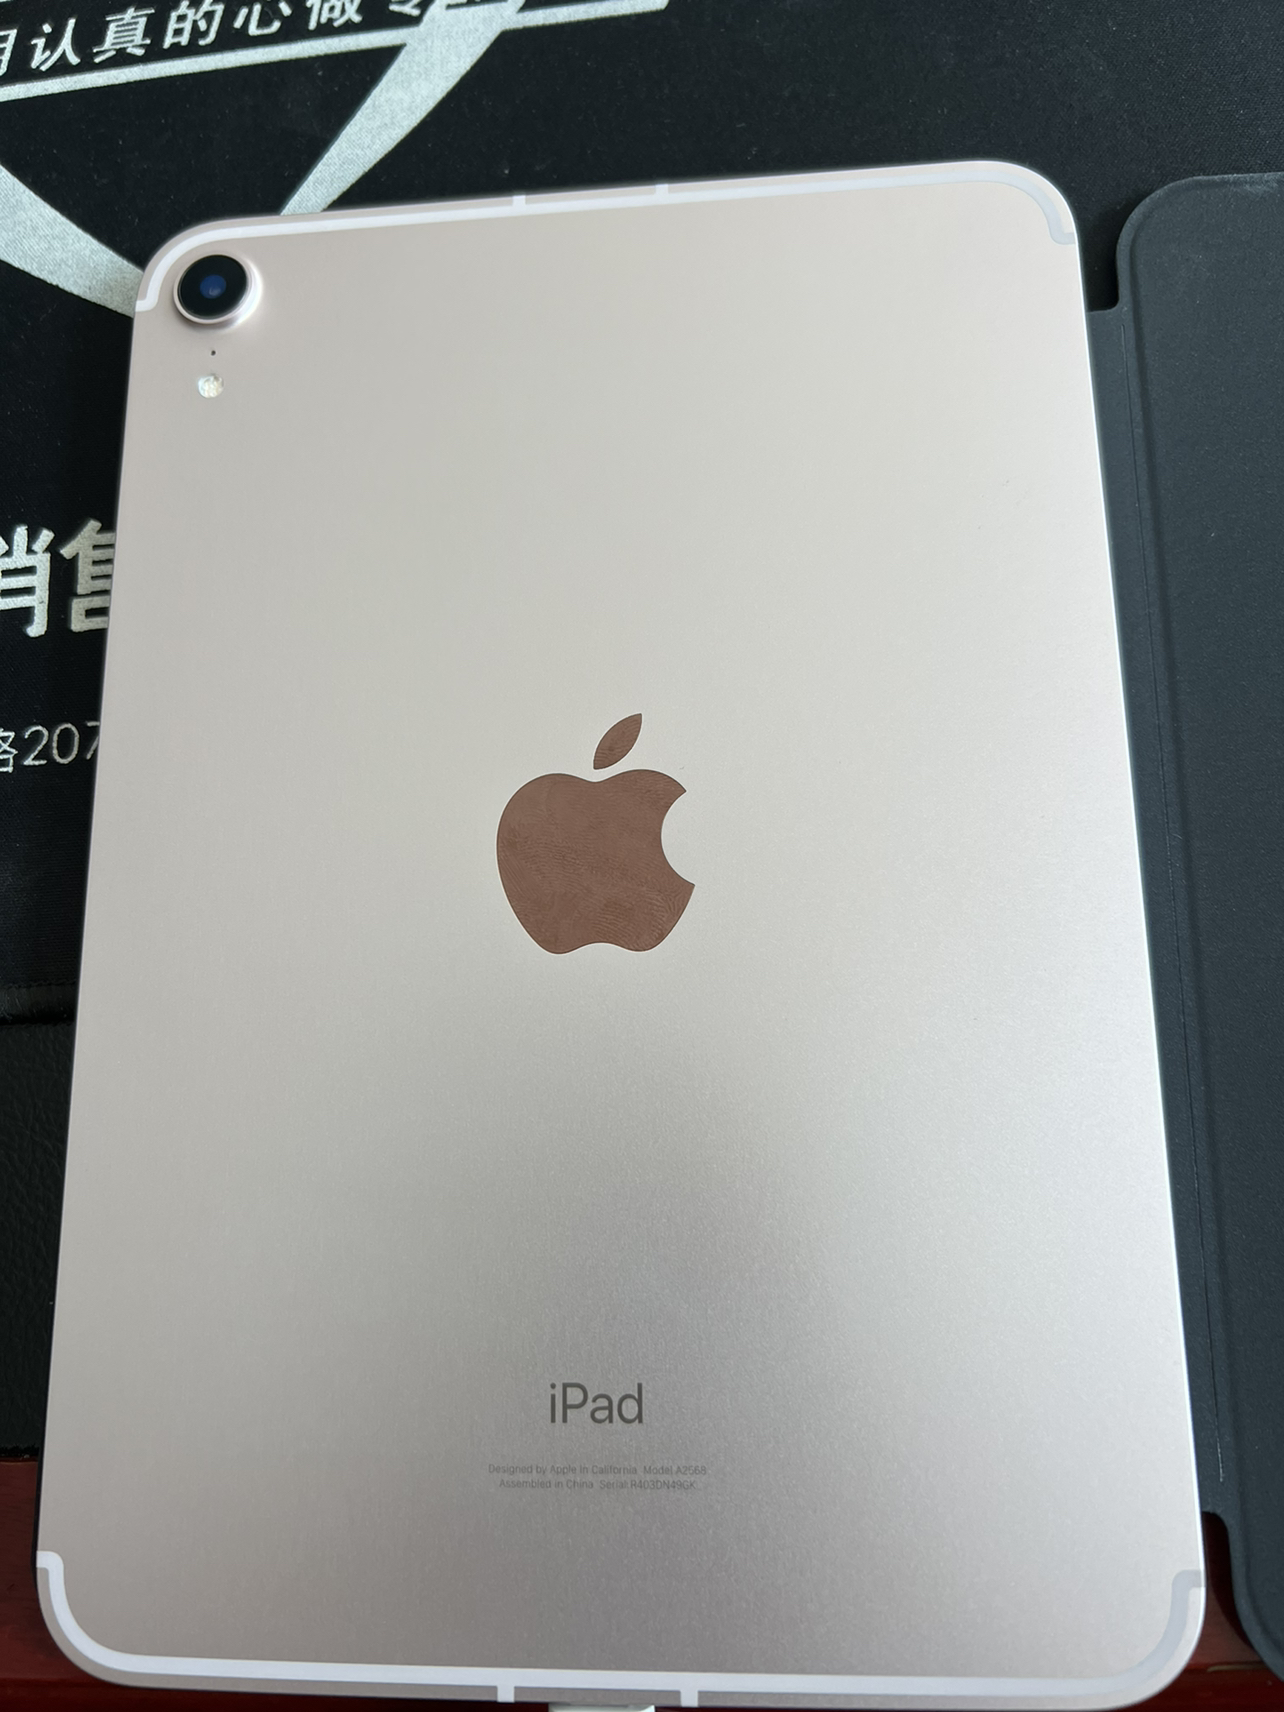 苹果 Apple iPad mini 6代 8.3英寸 平板电脑 256GB 5G插卡版+WiFi (无线局域网 + 蜂窝网络机型)深空灰 MK7T3 迷你6 mini6 海外版晒单图